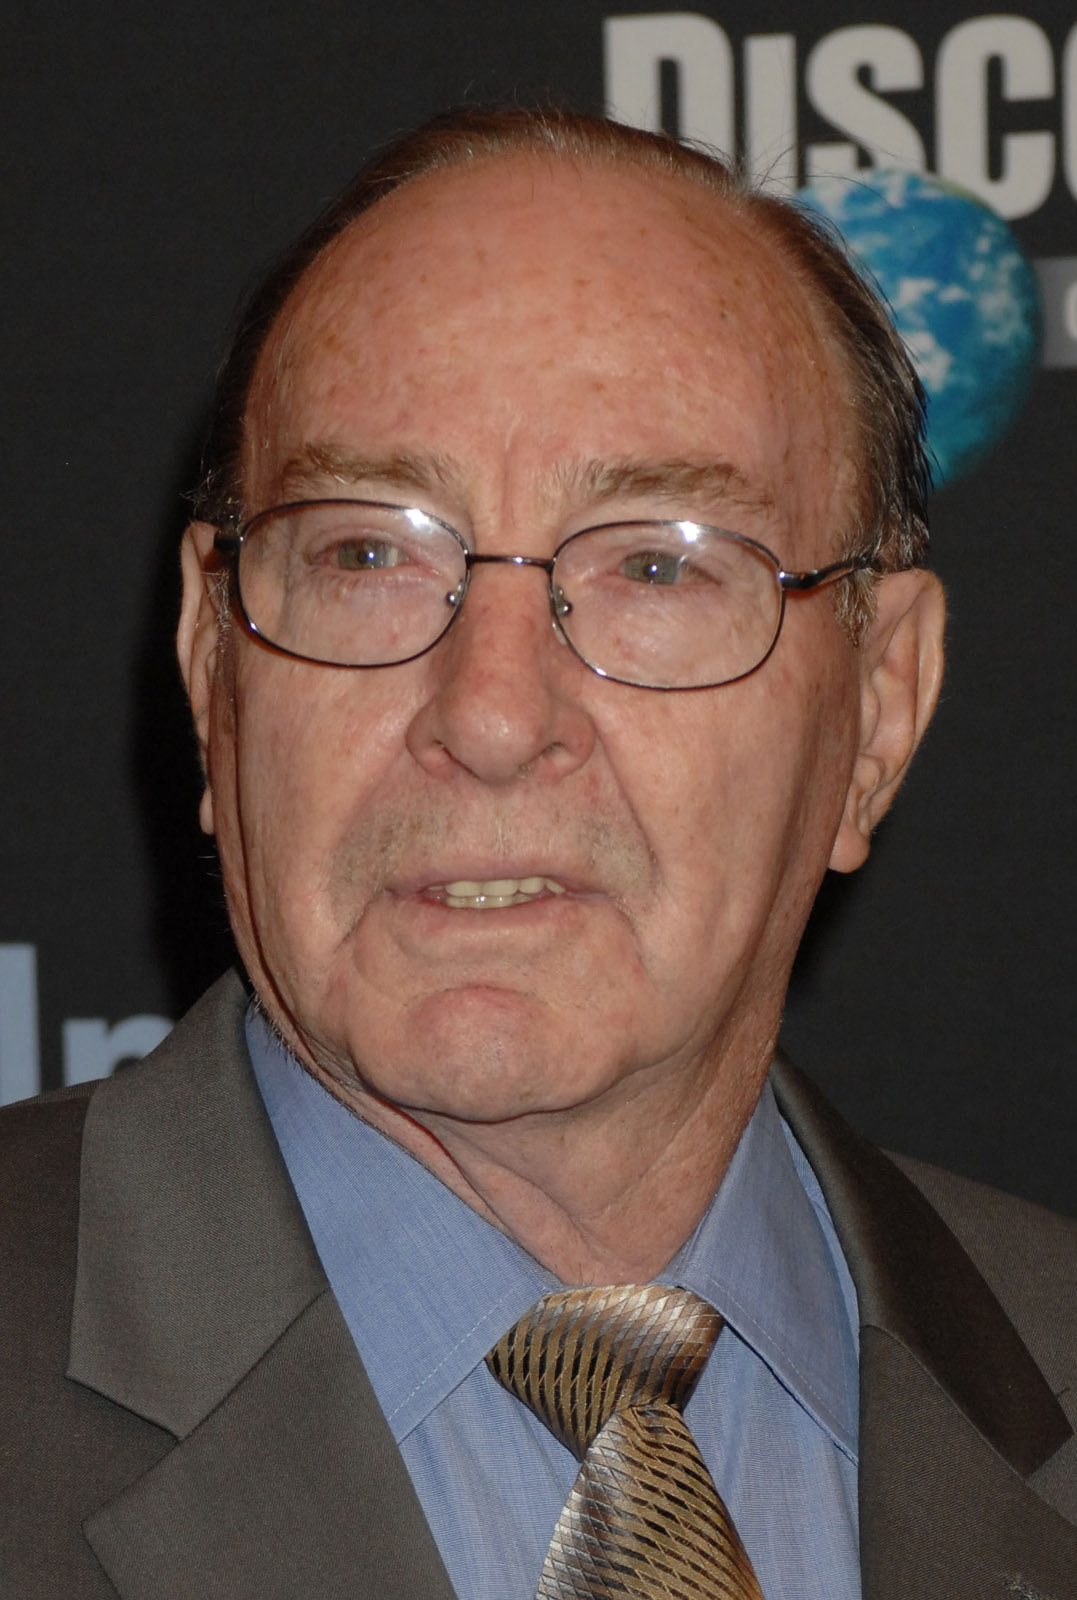 Edgar Mitchell
In 2007